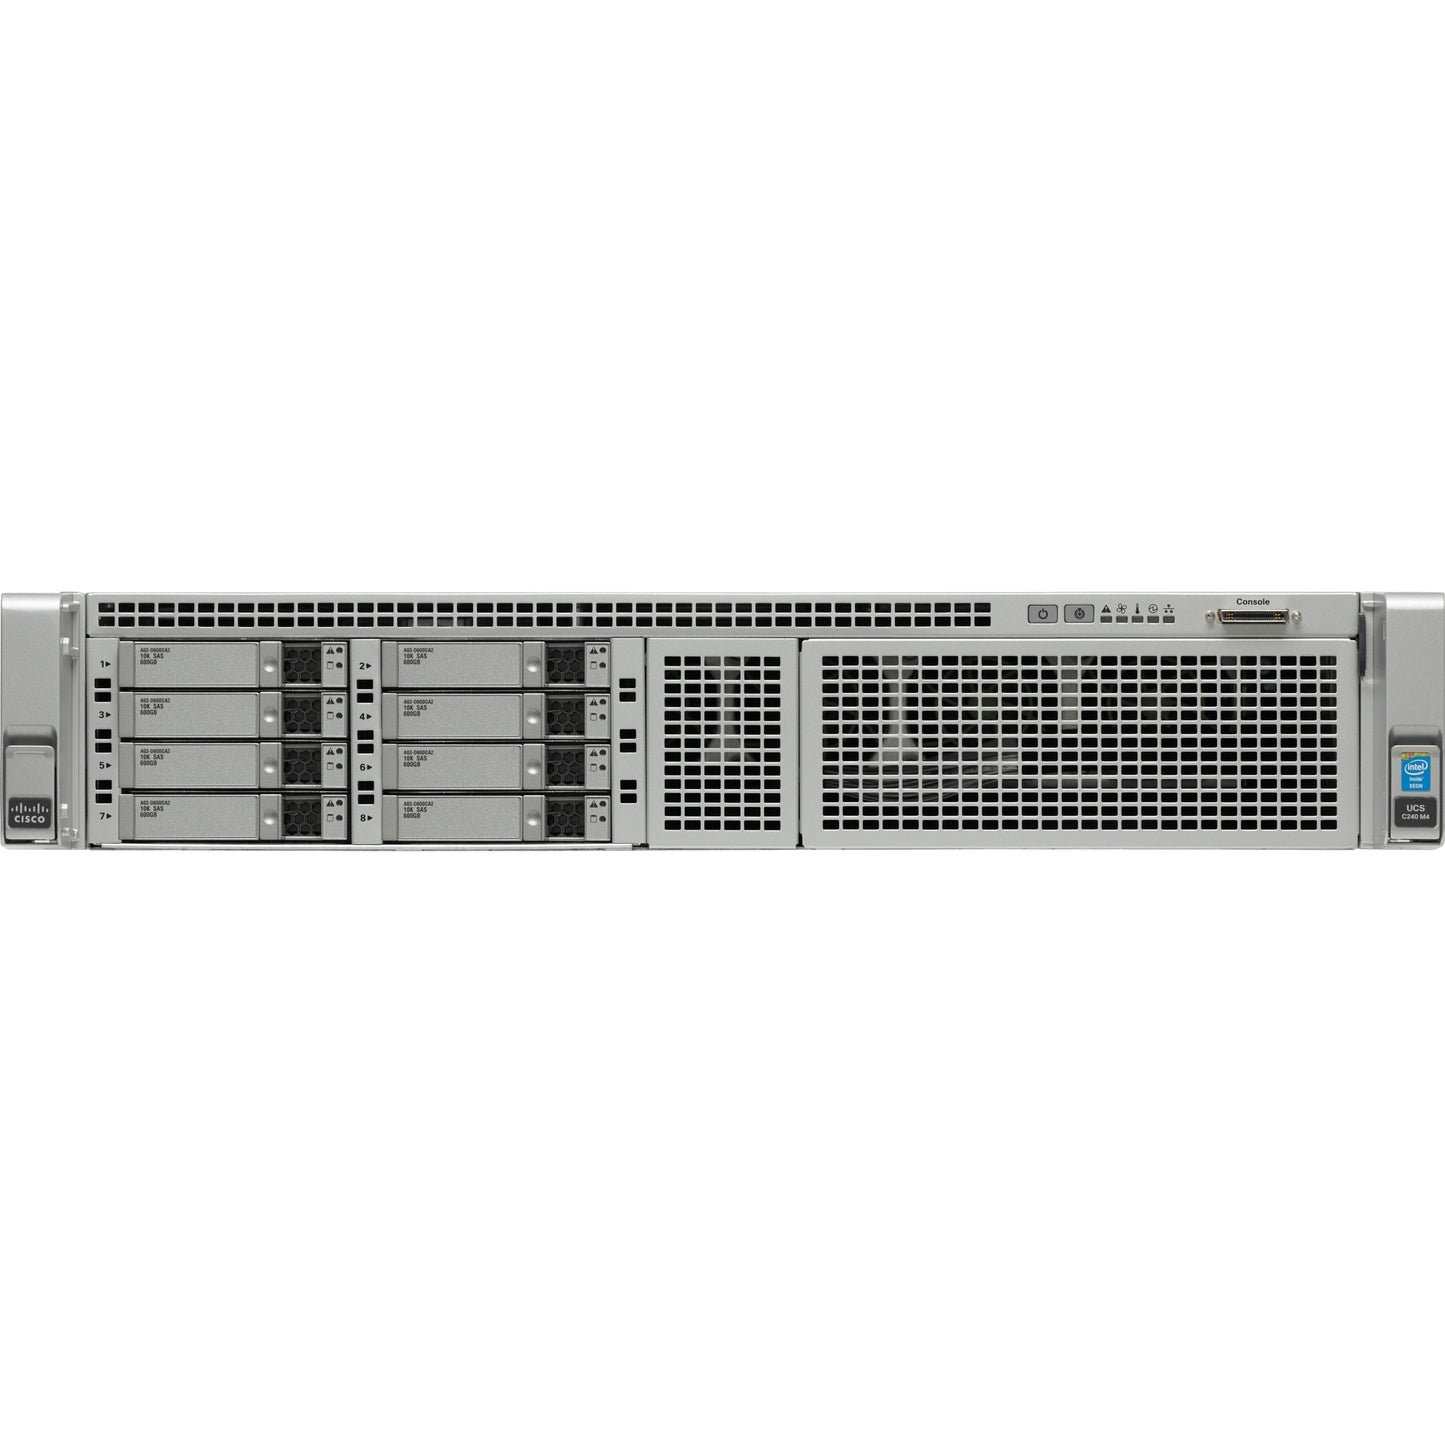 Cisco C240 M4 2U Rack Server - 2 x Intel Xeon E5-2680 v3 2.50 GHz - 256 GB RAM - Serial ATA Controller